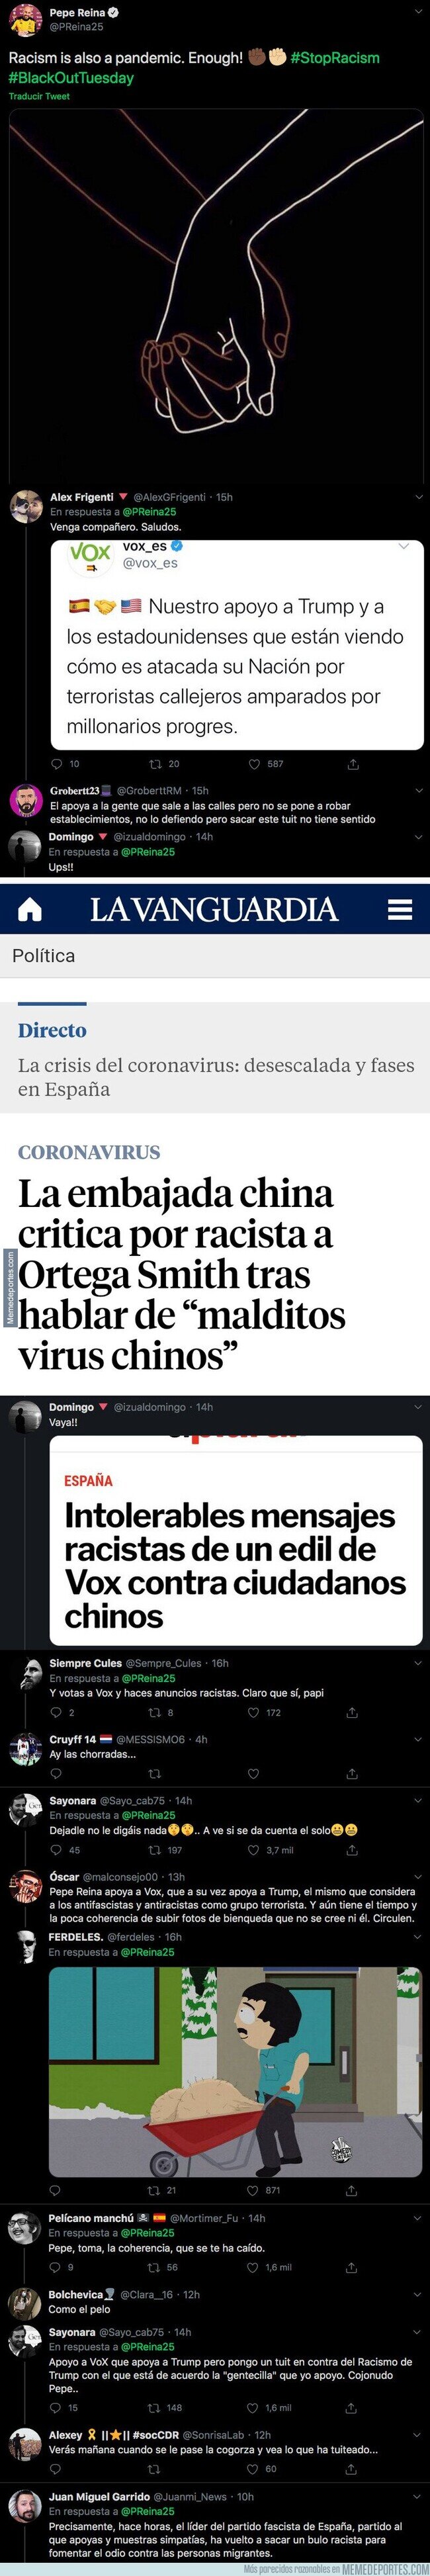 1105775 - Lío monumental: Pepe Reina publica una imagen contra el racismo y todo Twitter se le echa encima respondiendo sin piedad por su incoherencia